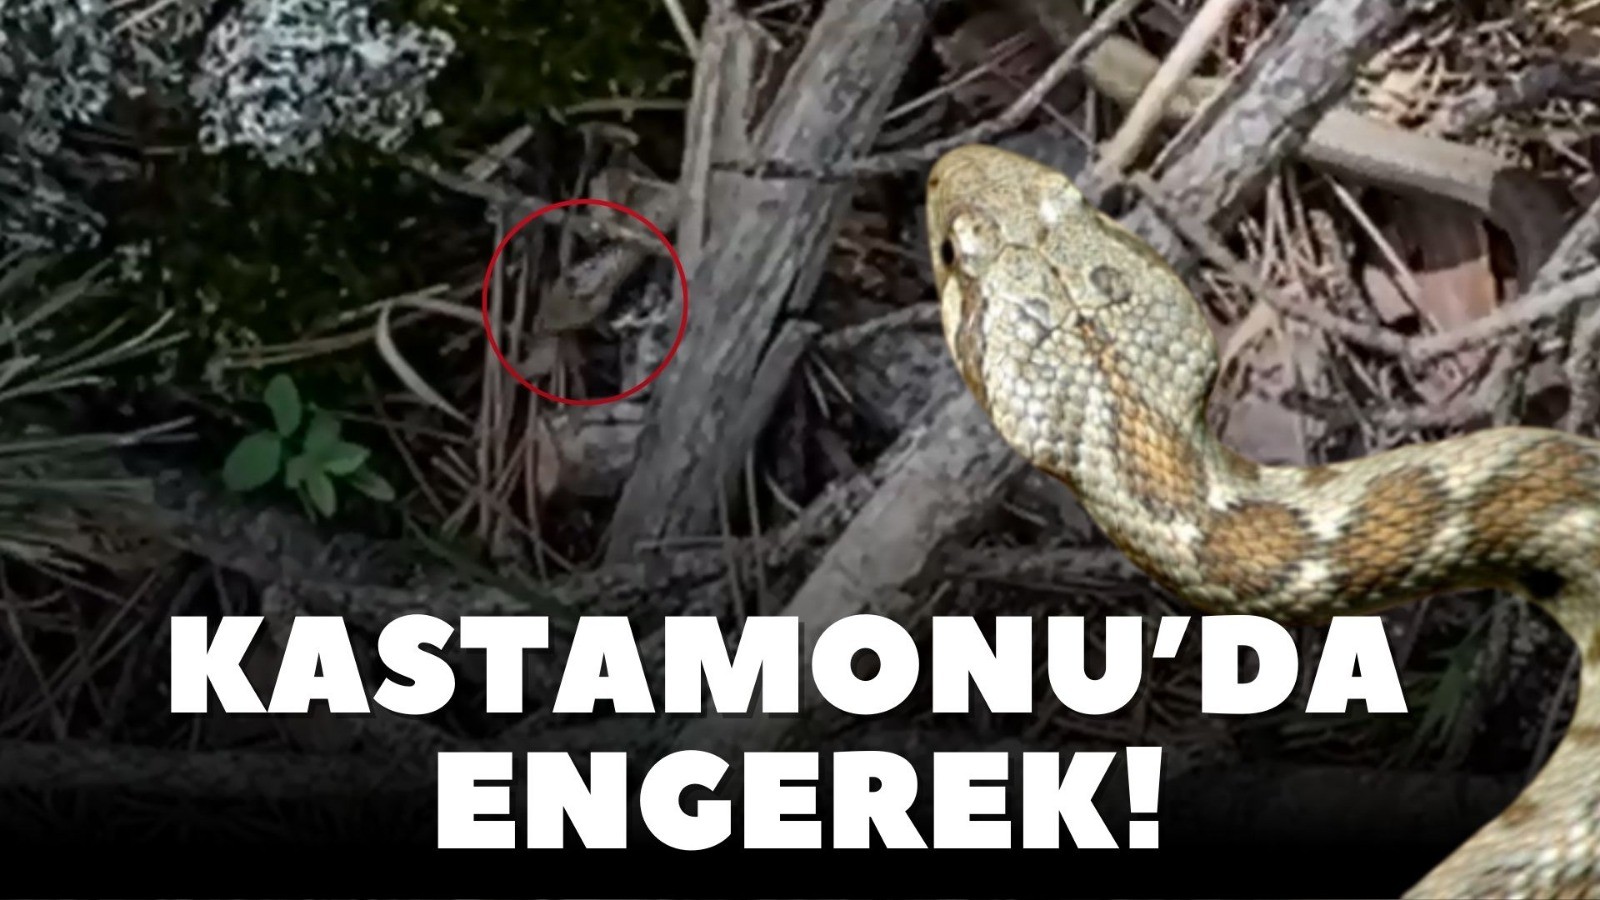 Kastamonu'da engerek yılanı! Üçgen başlı